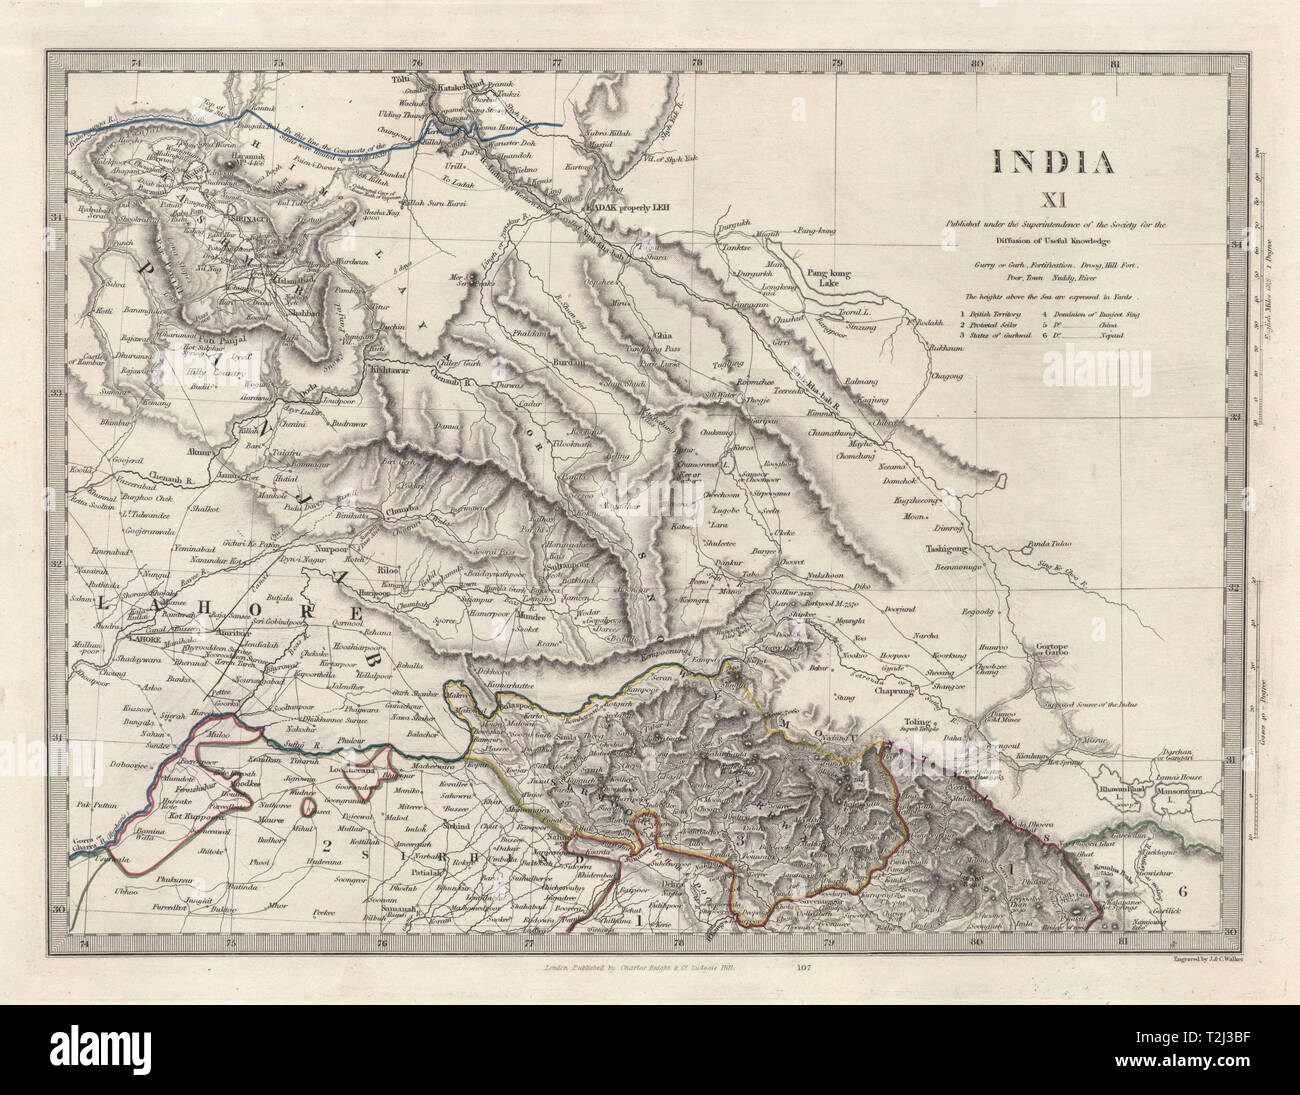 INDIA XI. PAKISTAN. Punjab Lahore Garhwal Sirhind China Kashmir. SDUK 1846 map Stock Photo